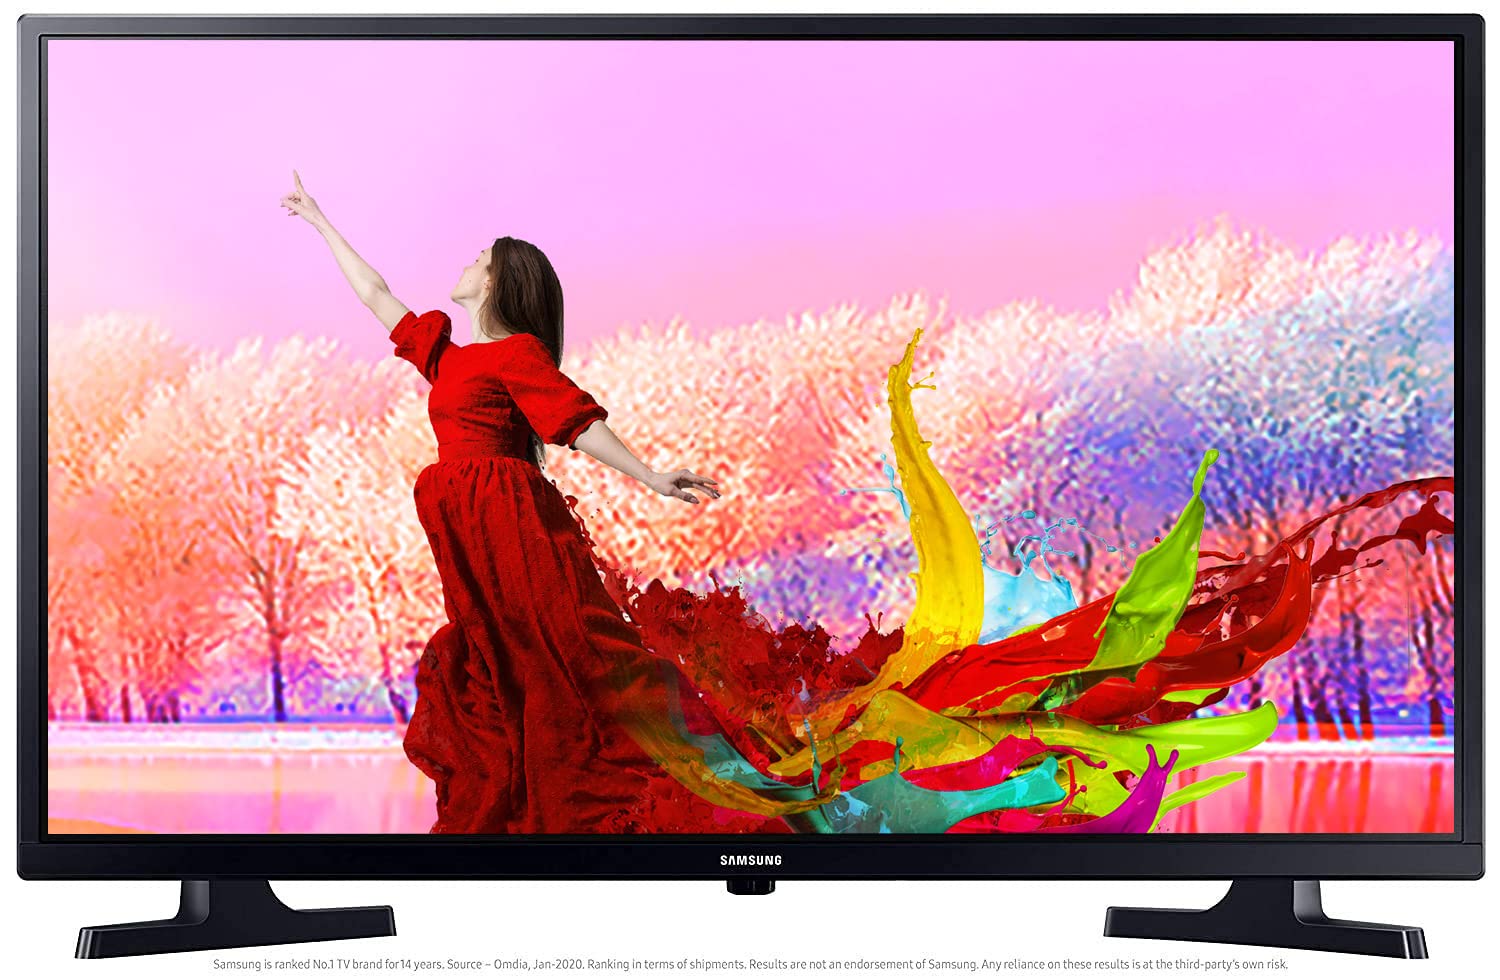 Best TV Offer: अमेजन डील में सबसे ज्यादा बिकने वाला टीवी खरीदें 15 हजार रुपये से भी कम में!